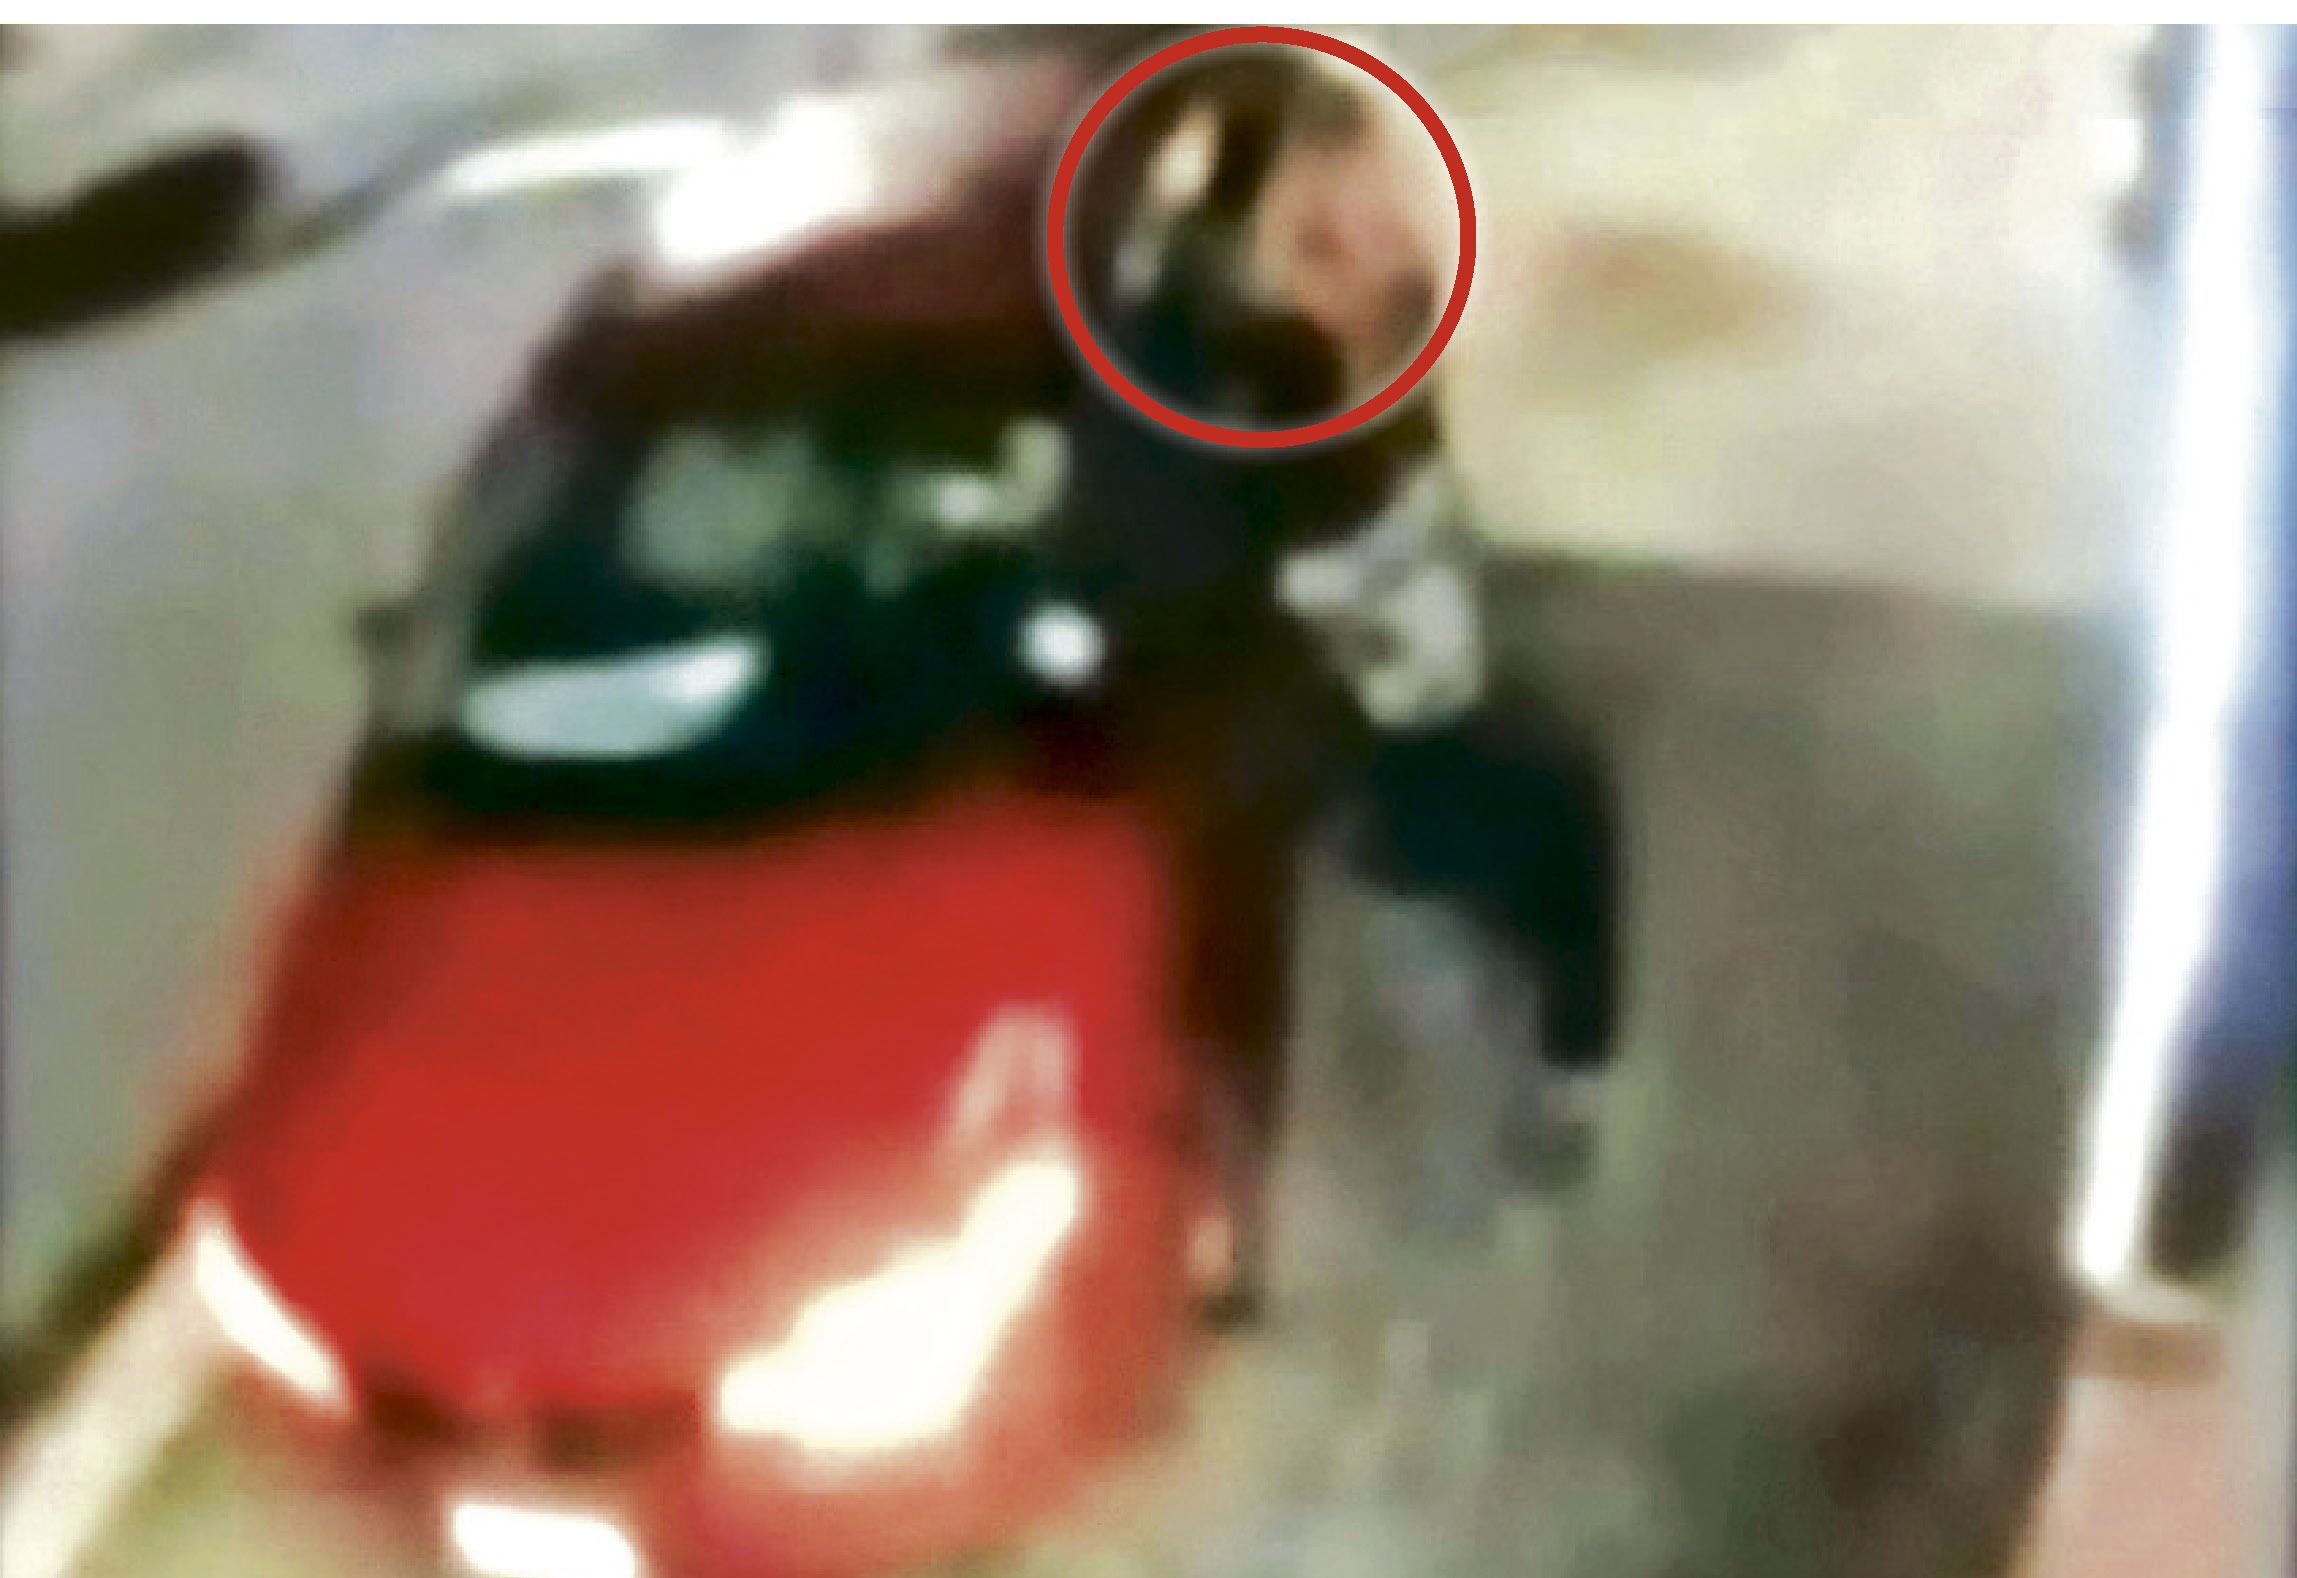 ■有网民上载短片，显示在快餐店的驾车外带车道上，一个男子（红圈示）企图打开一个司机旁的车门，惹未抢车疑云。CTV